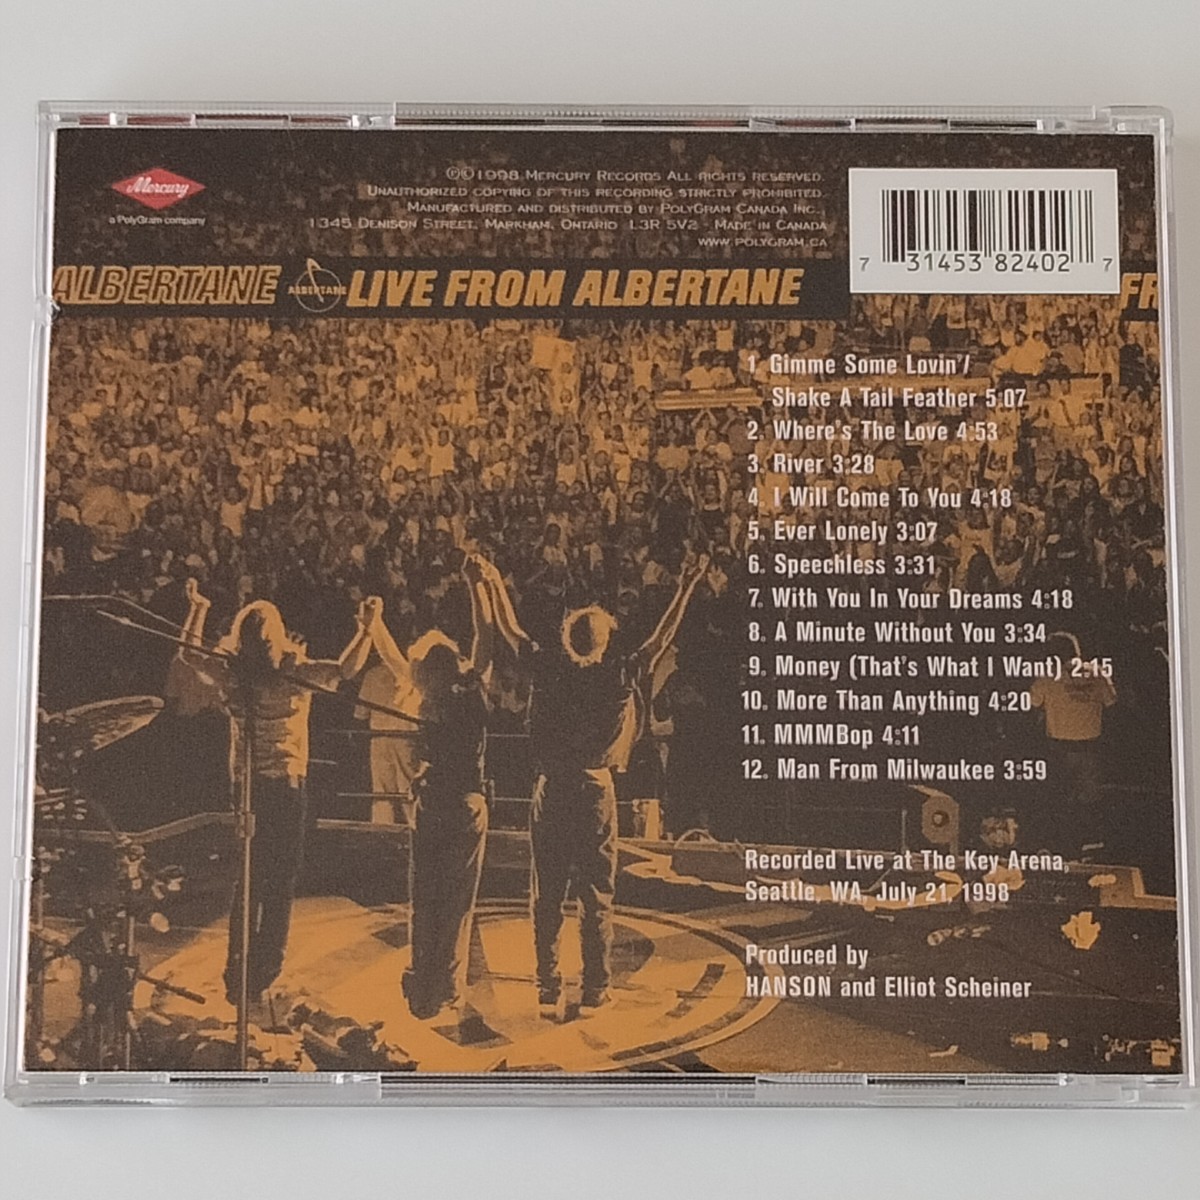 【輸入盤CD】HANSON / LIVE FROM ALBERTANE (3145382402) ハンソン / ライヴ・フロム・アルバテーン 98年シアトルライヴ録音盤_画像2